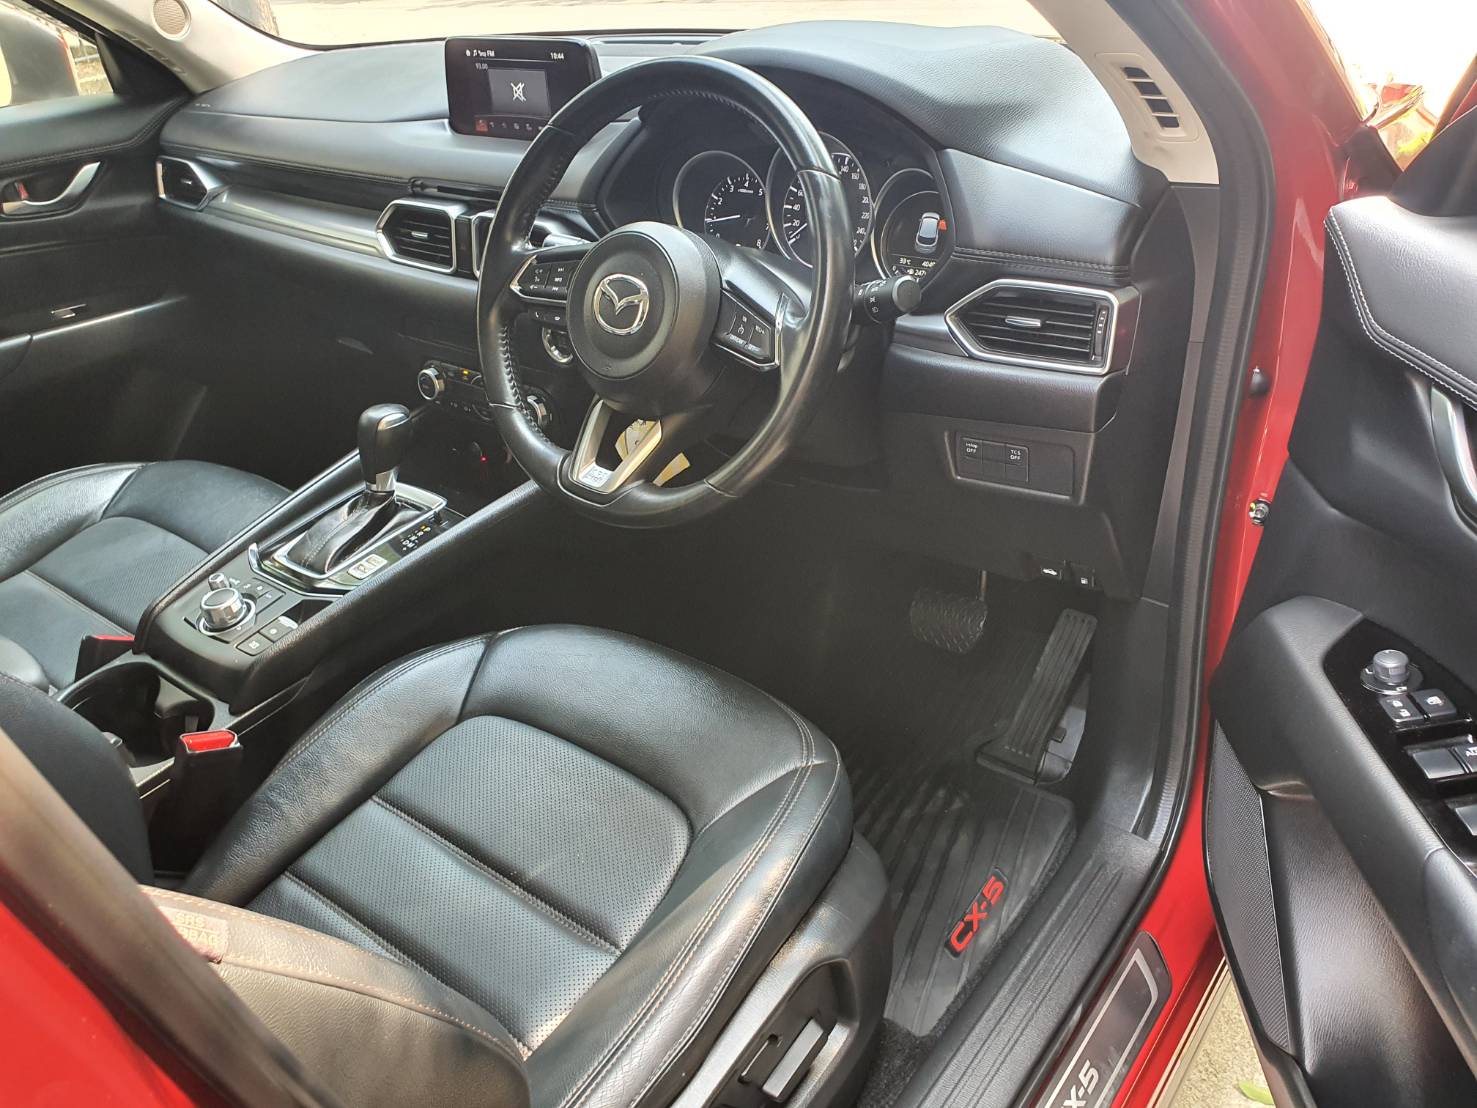 Mazda CX5 2.0C สีแดง ปี 2019 แท้ Auto มือหนึ่ง วิ่งน้อย ไม่เคยทำสี